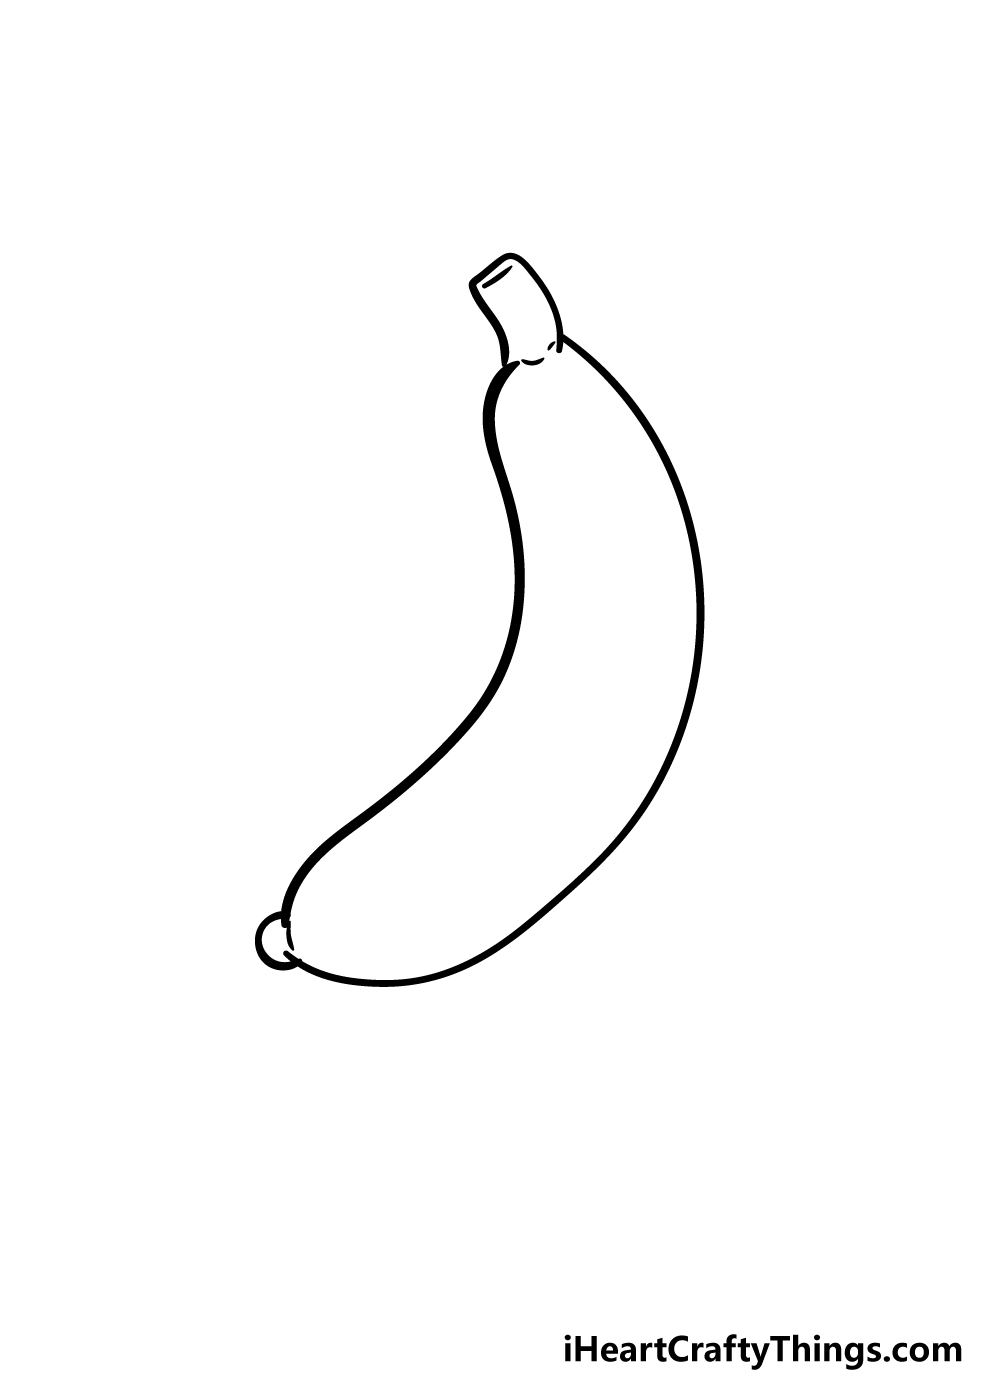 banana drawing step 4